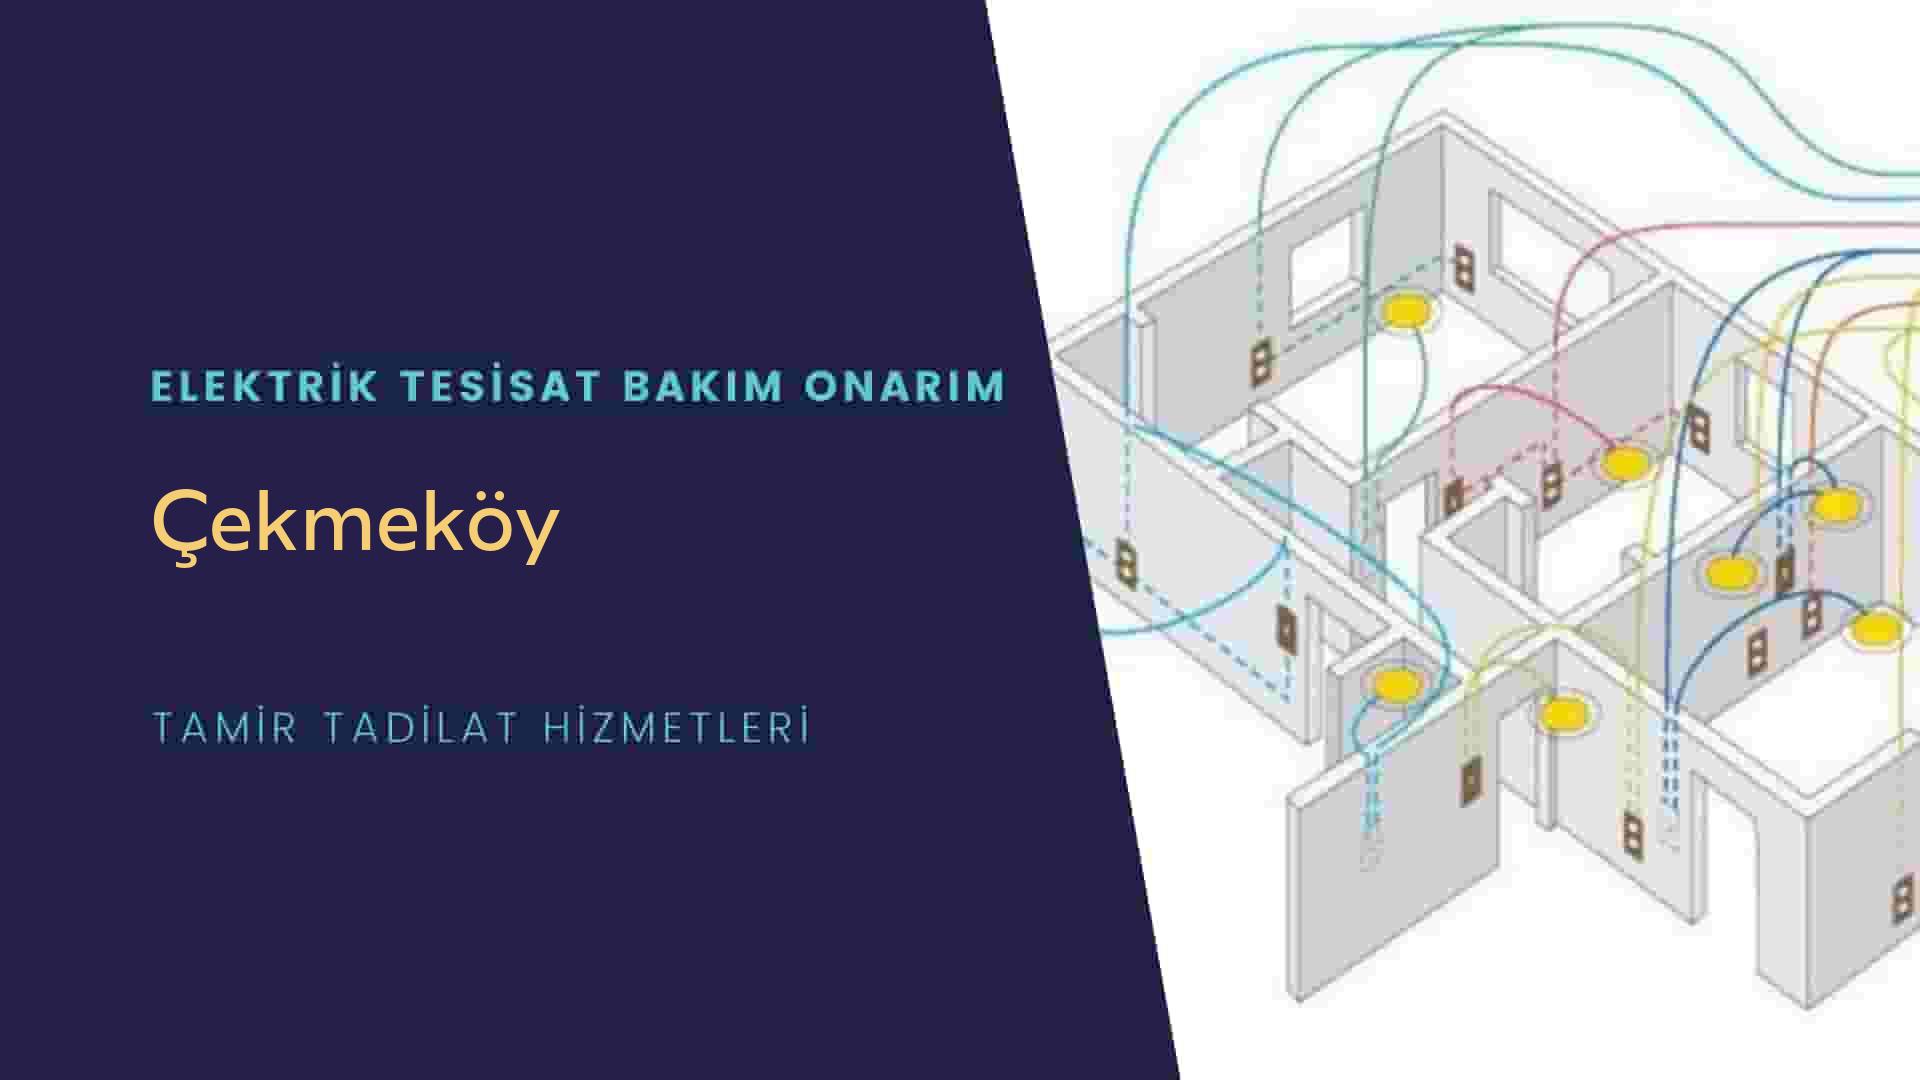 Çekmeköy'de elektrik tesisatı ustalarımı arıyorsunuz doğru adrestenizi Çekmeköy elektrik tesisatı ustalarımız 7/24 sizlere hizmet vermekten mutluluk duyar.